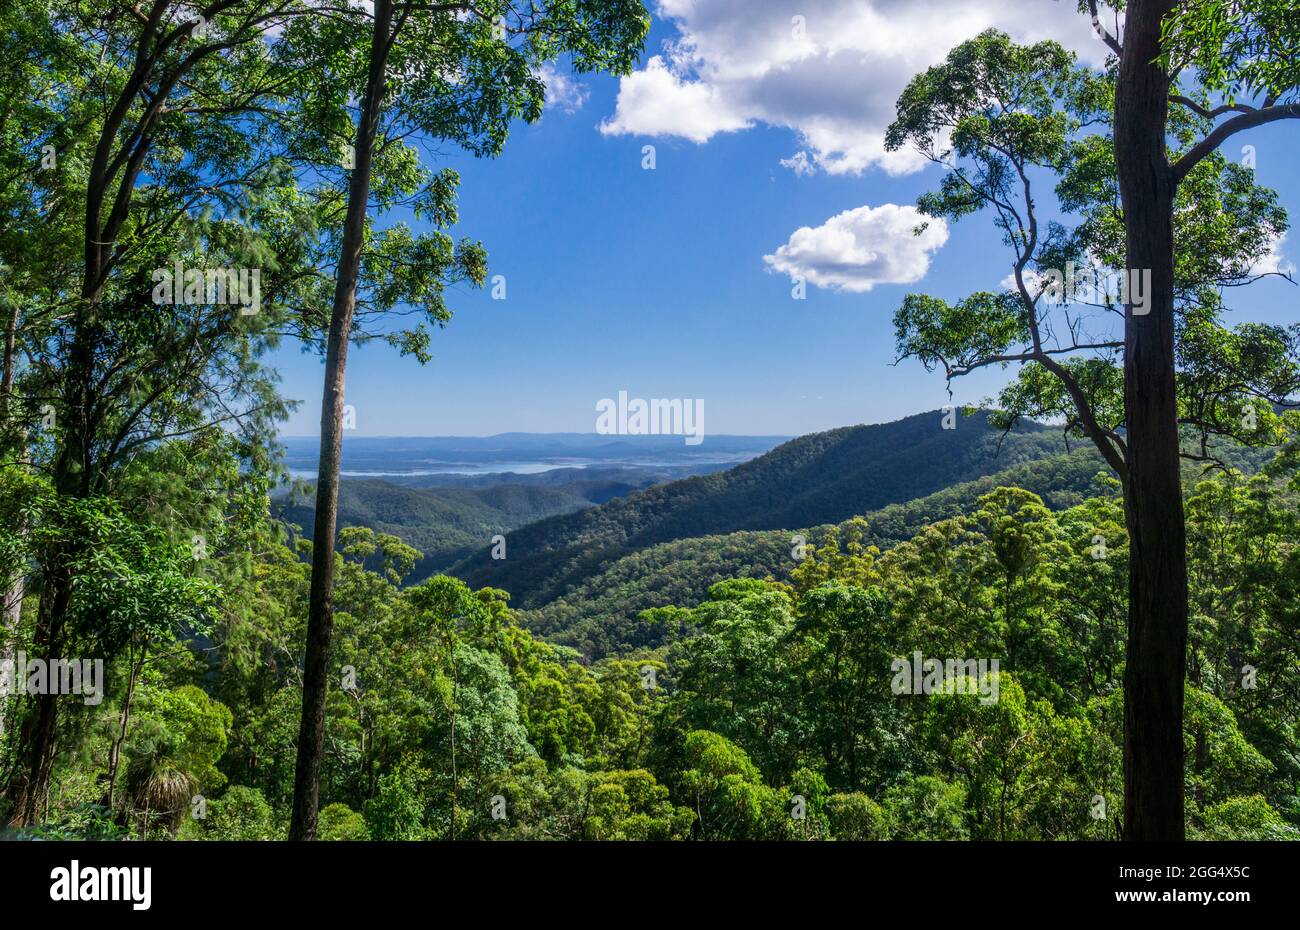 Vista desde el mirador de Wivenhoe en Mount Glorious, Parque Nacional D'Aguilar, sudeste de Queensland, Australia Foto de stock